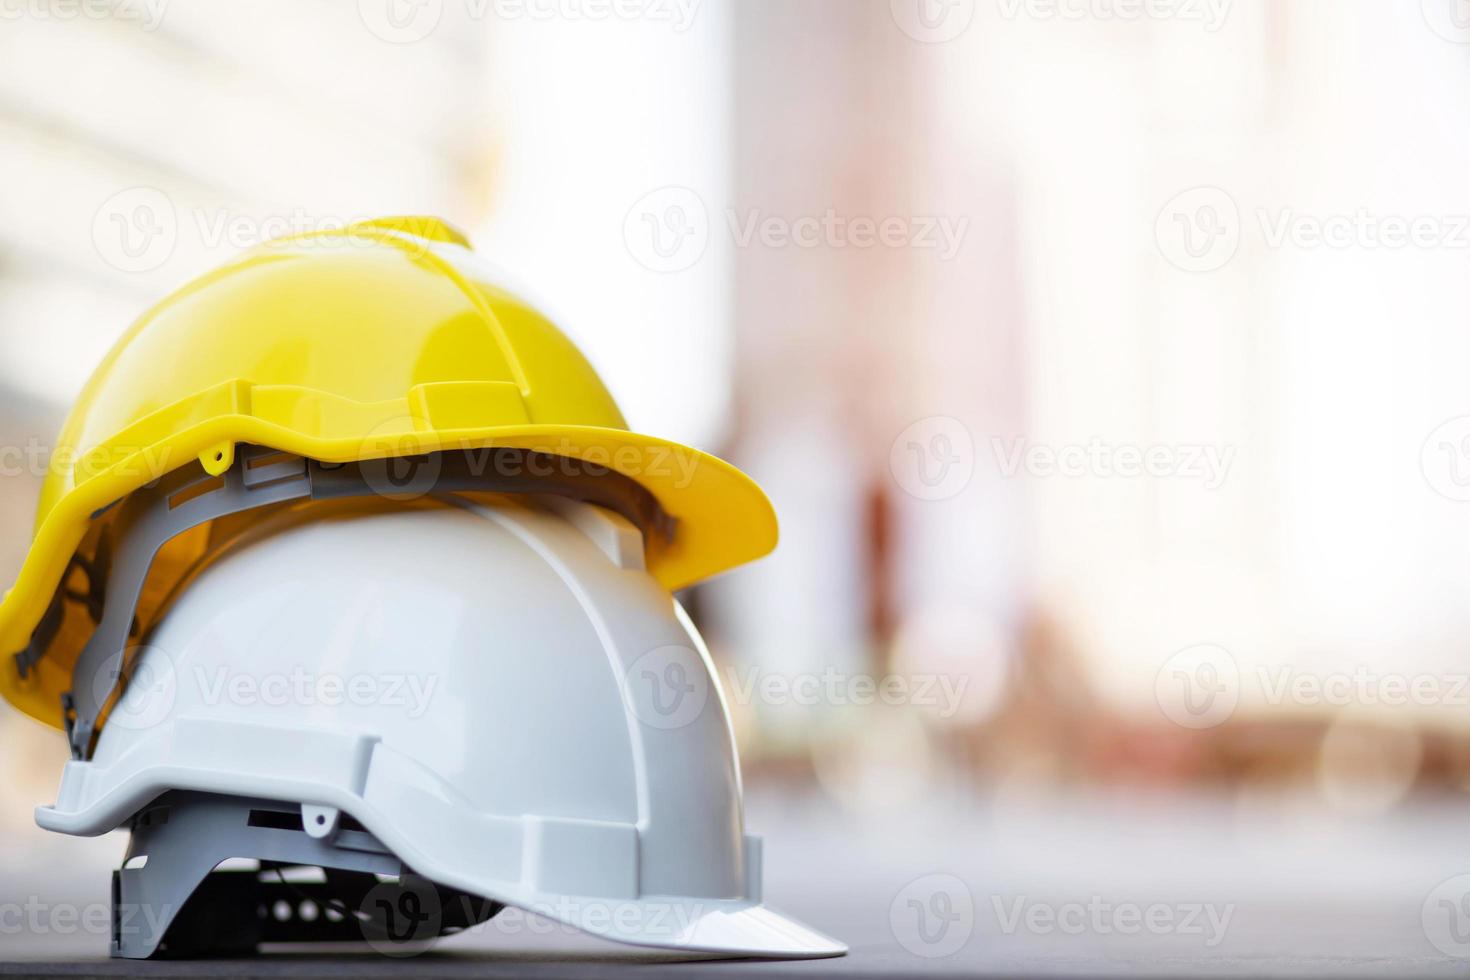 chapeau de casque de sécurité dur jaune et blanc dans le projet sur le chantier de construction sur sol en béton sur la ville avec la lumière du soleil. casque pour ouvrier comme ingénieur ou ouvrier. concept de sécurité d'abord. photo